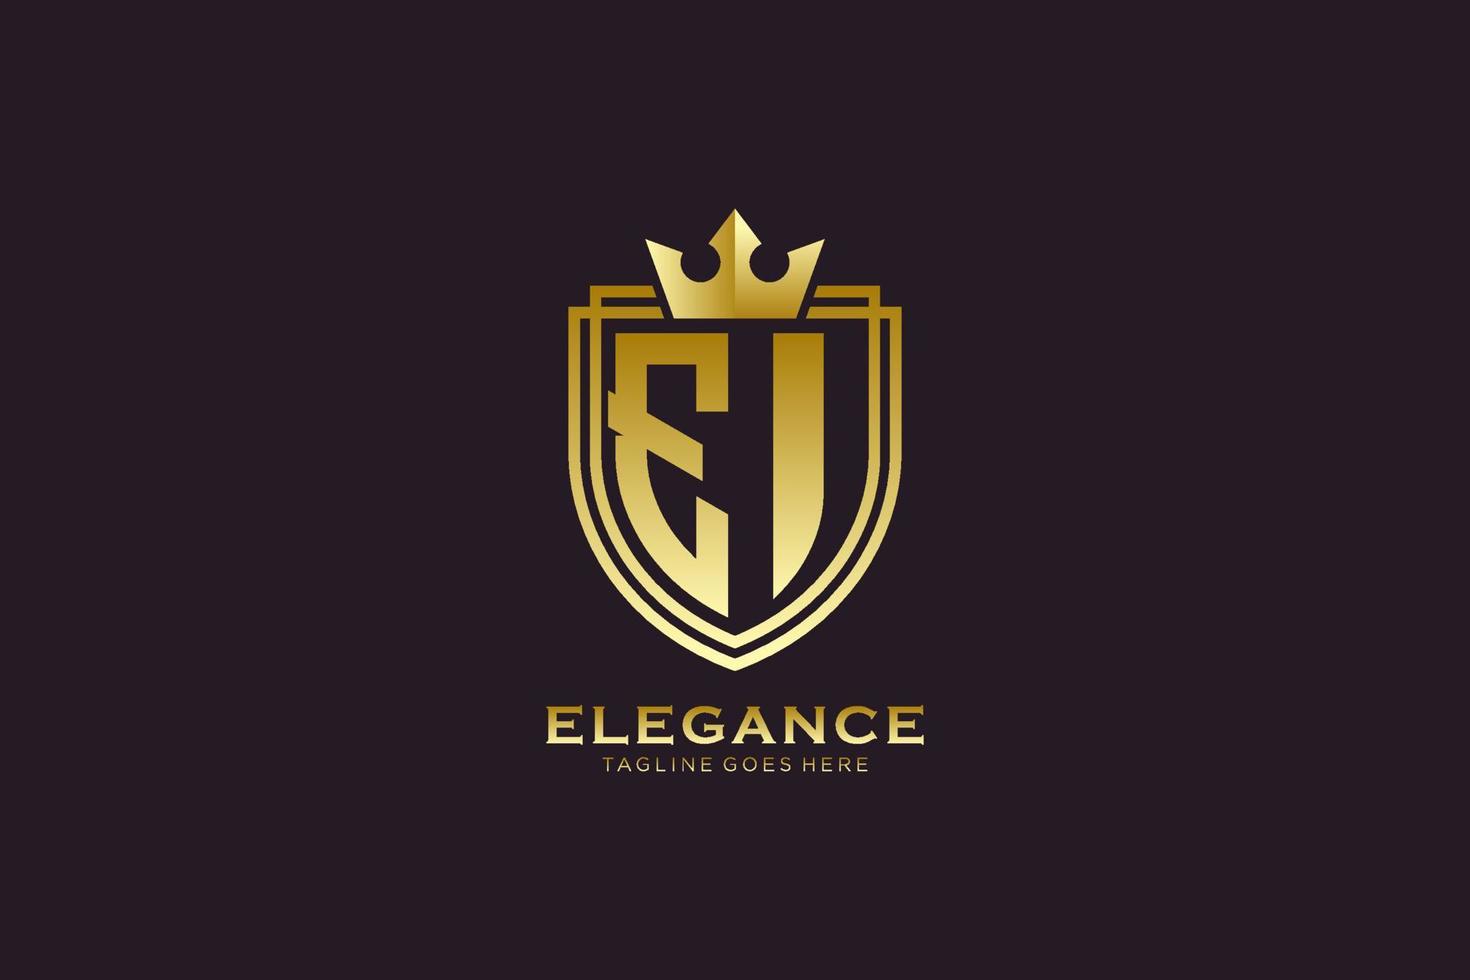 logo monogramme de luxe élégant initial ei ou modèle de badge avec volutes et couronne royale - parfait pour les projets de marque de luxe vecteur